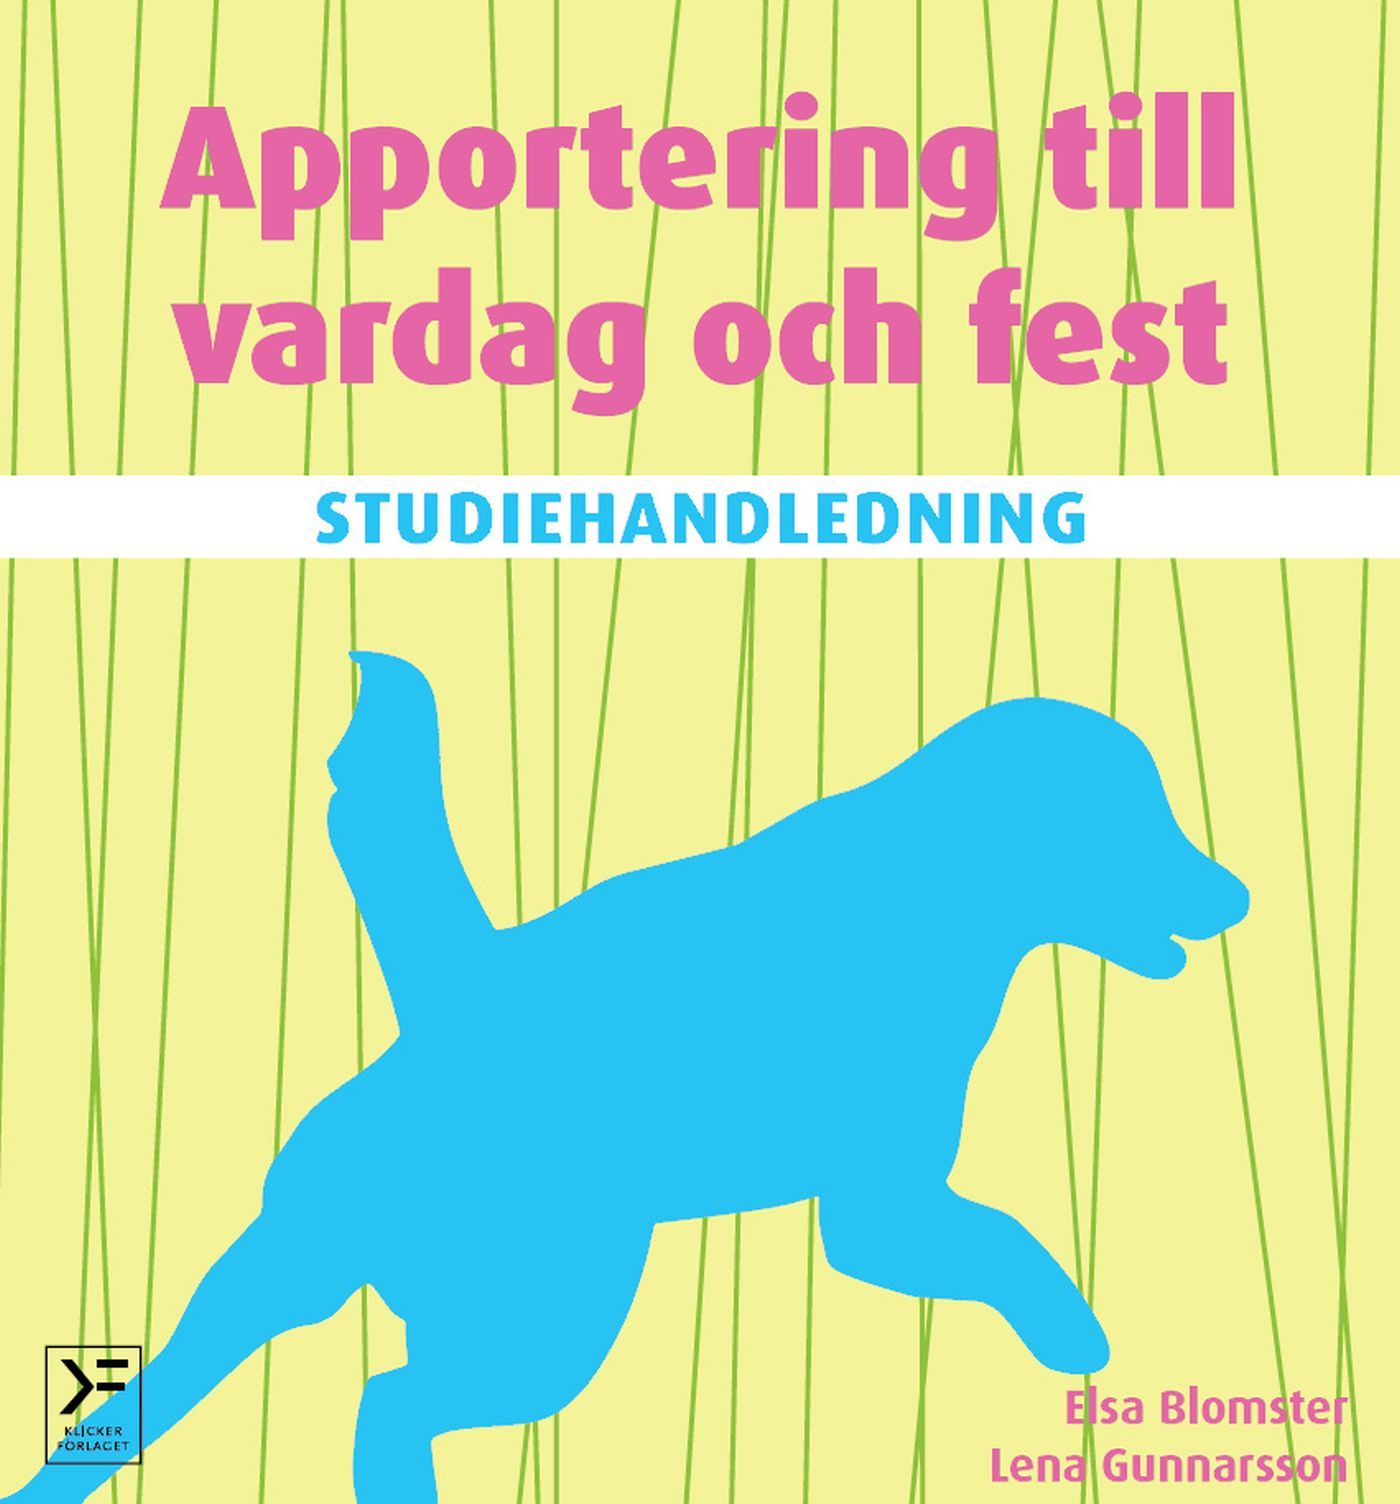 Studiehandledning Apportering till vardag och fest, e-bok av Elsa Blomster, Lena Gunnarsson